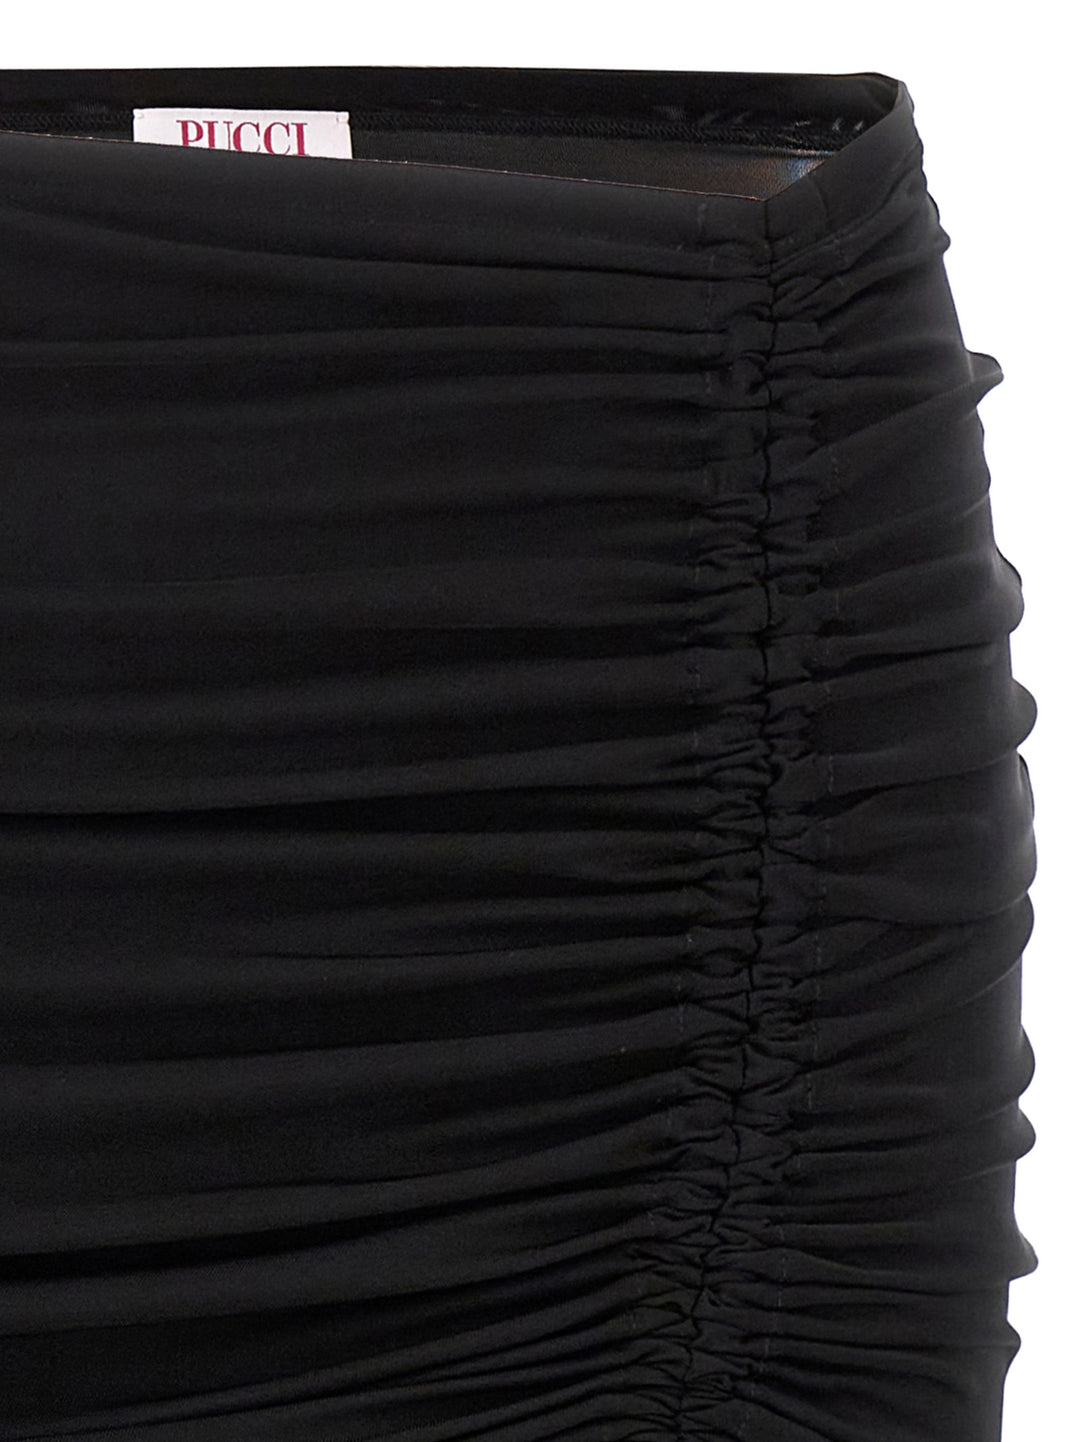 Gathered Longuette Skirt Gonne Nero